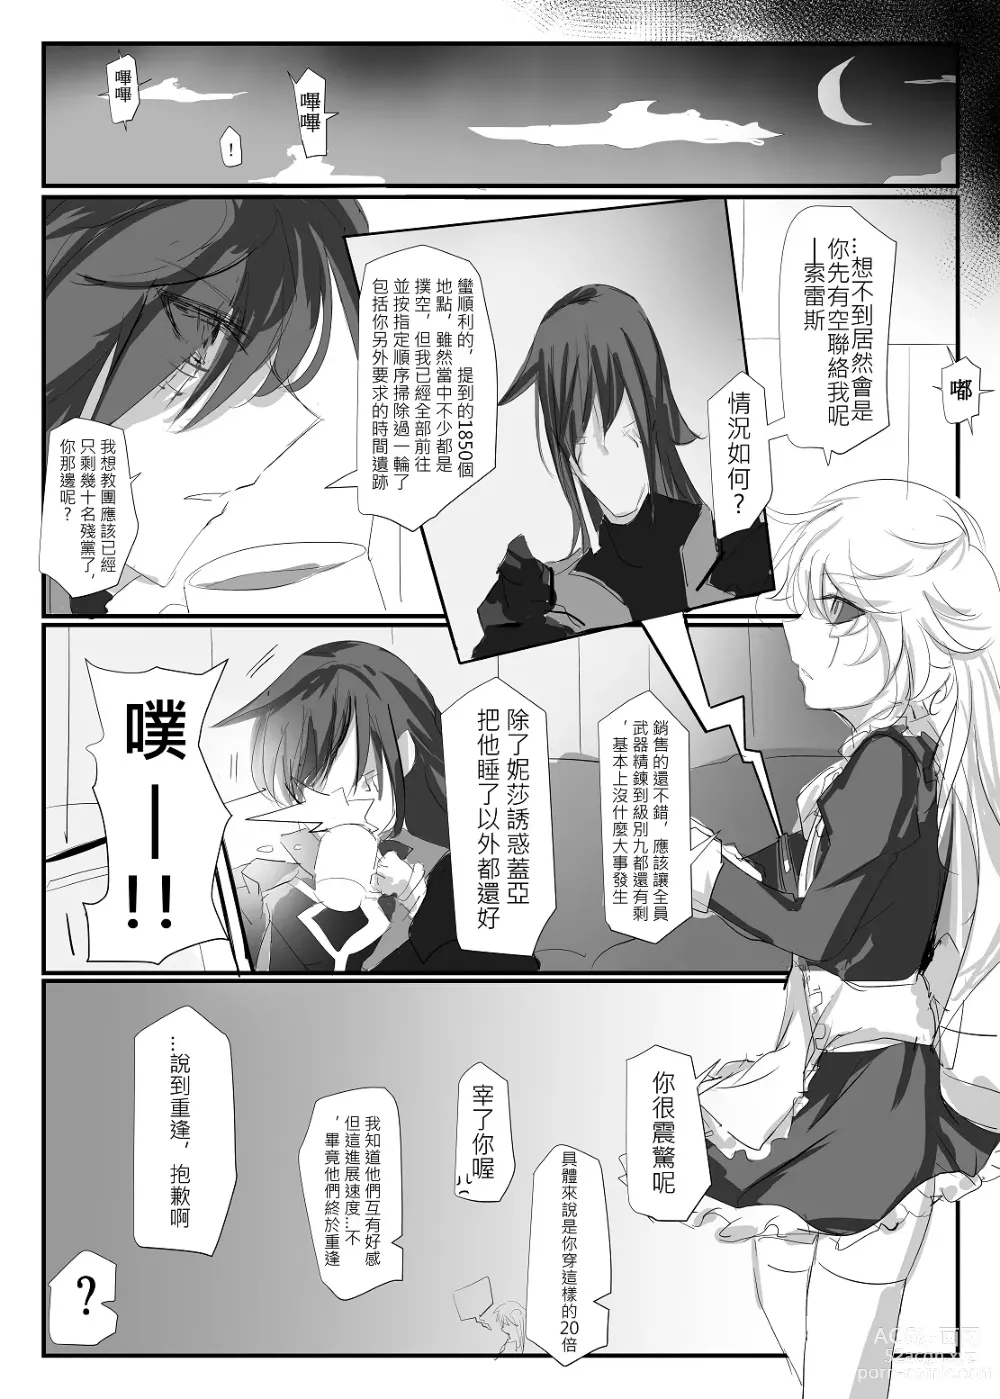 Page 33 of doujinshi ELSWORD:TYPE-V (decensored)